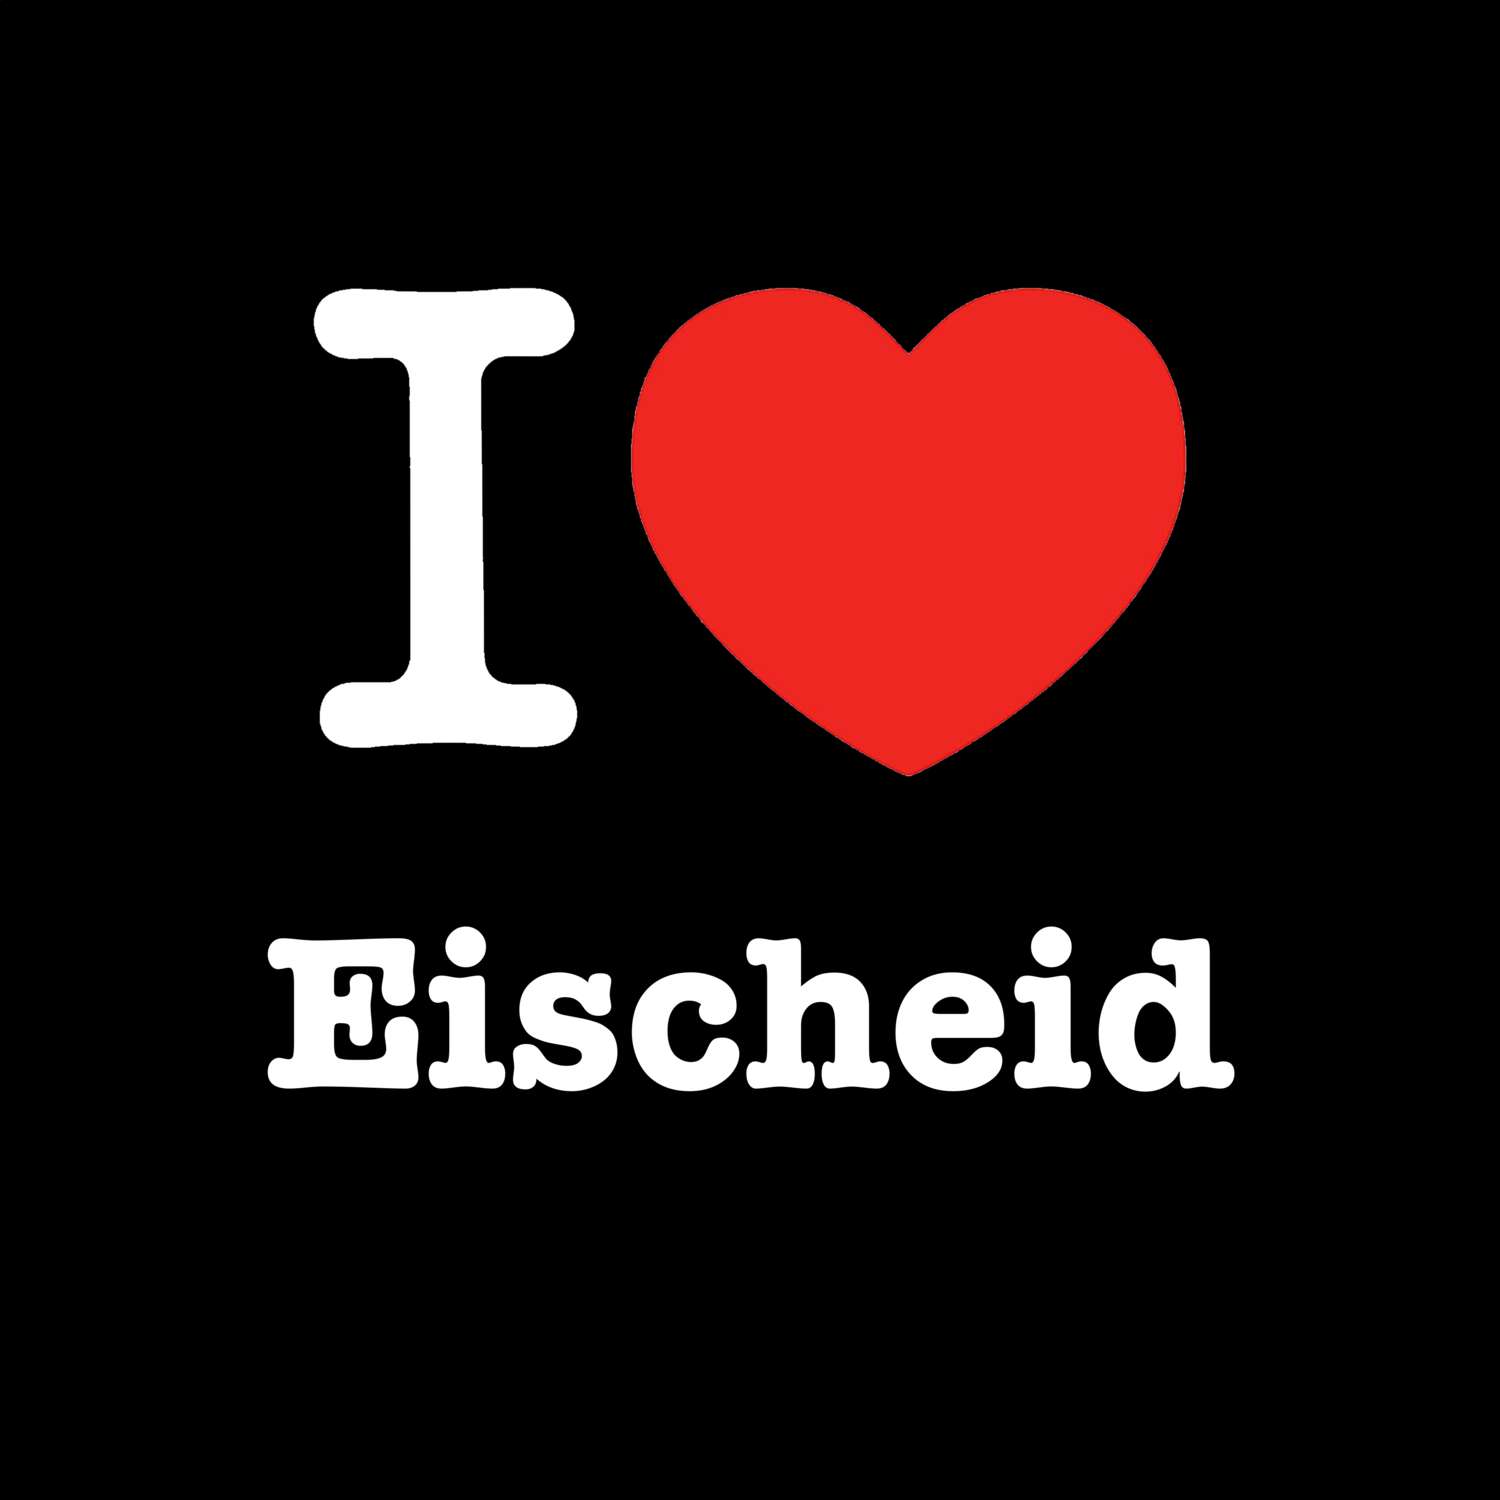 Eischeid T-Shirt »I love«